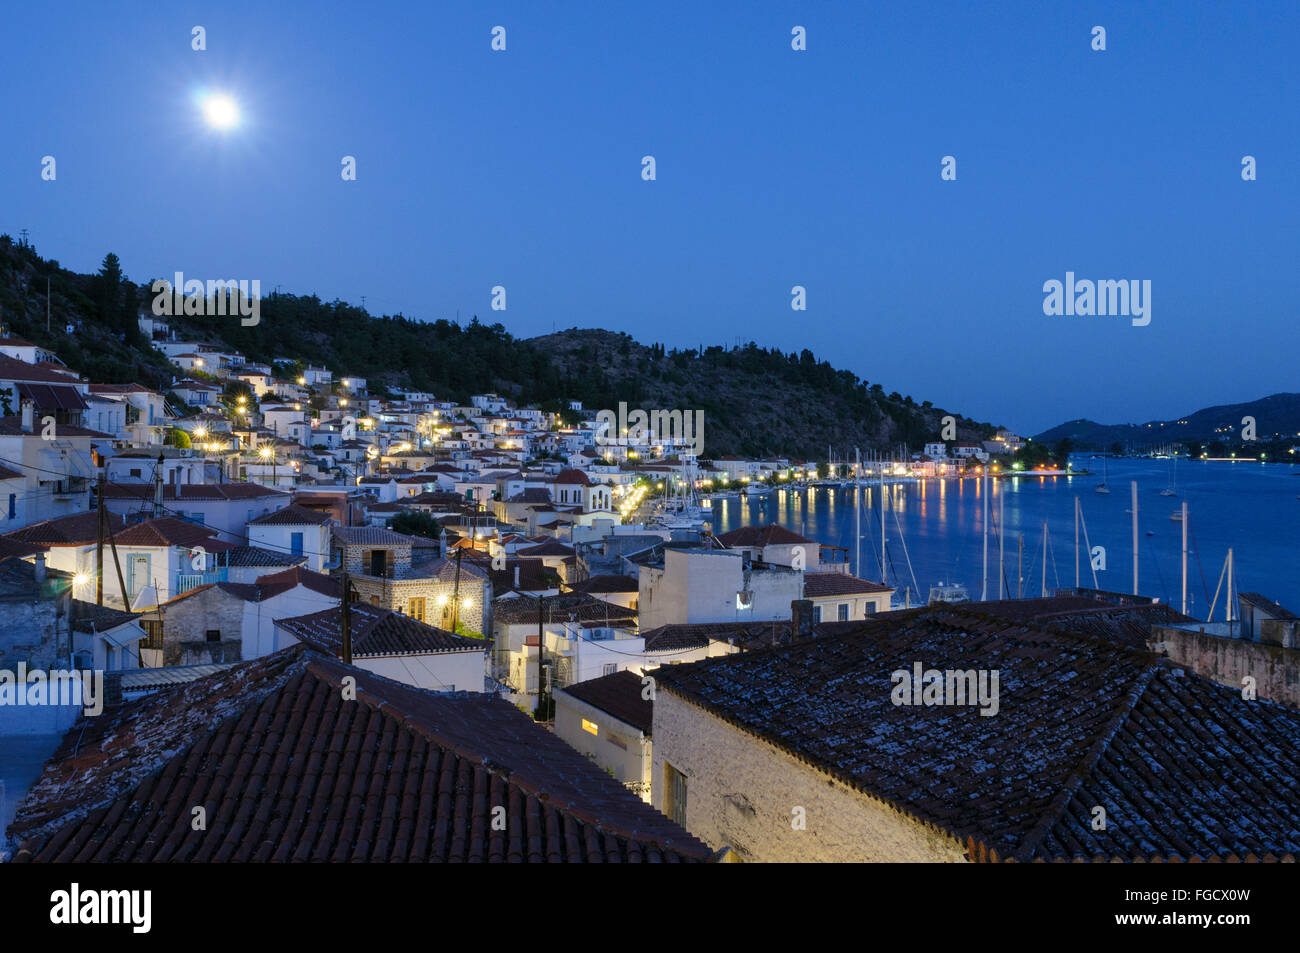 La ville d'Egine la nuit, Aegina, îles saroniques, Grèce Banque D'Images